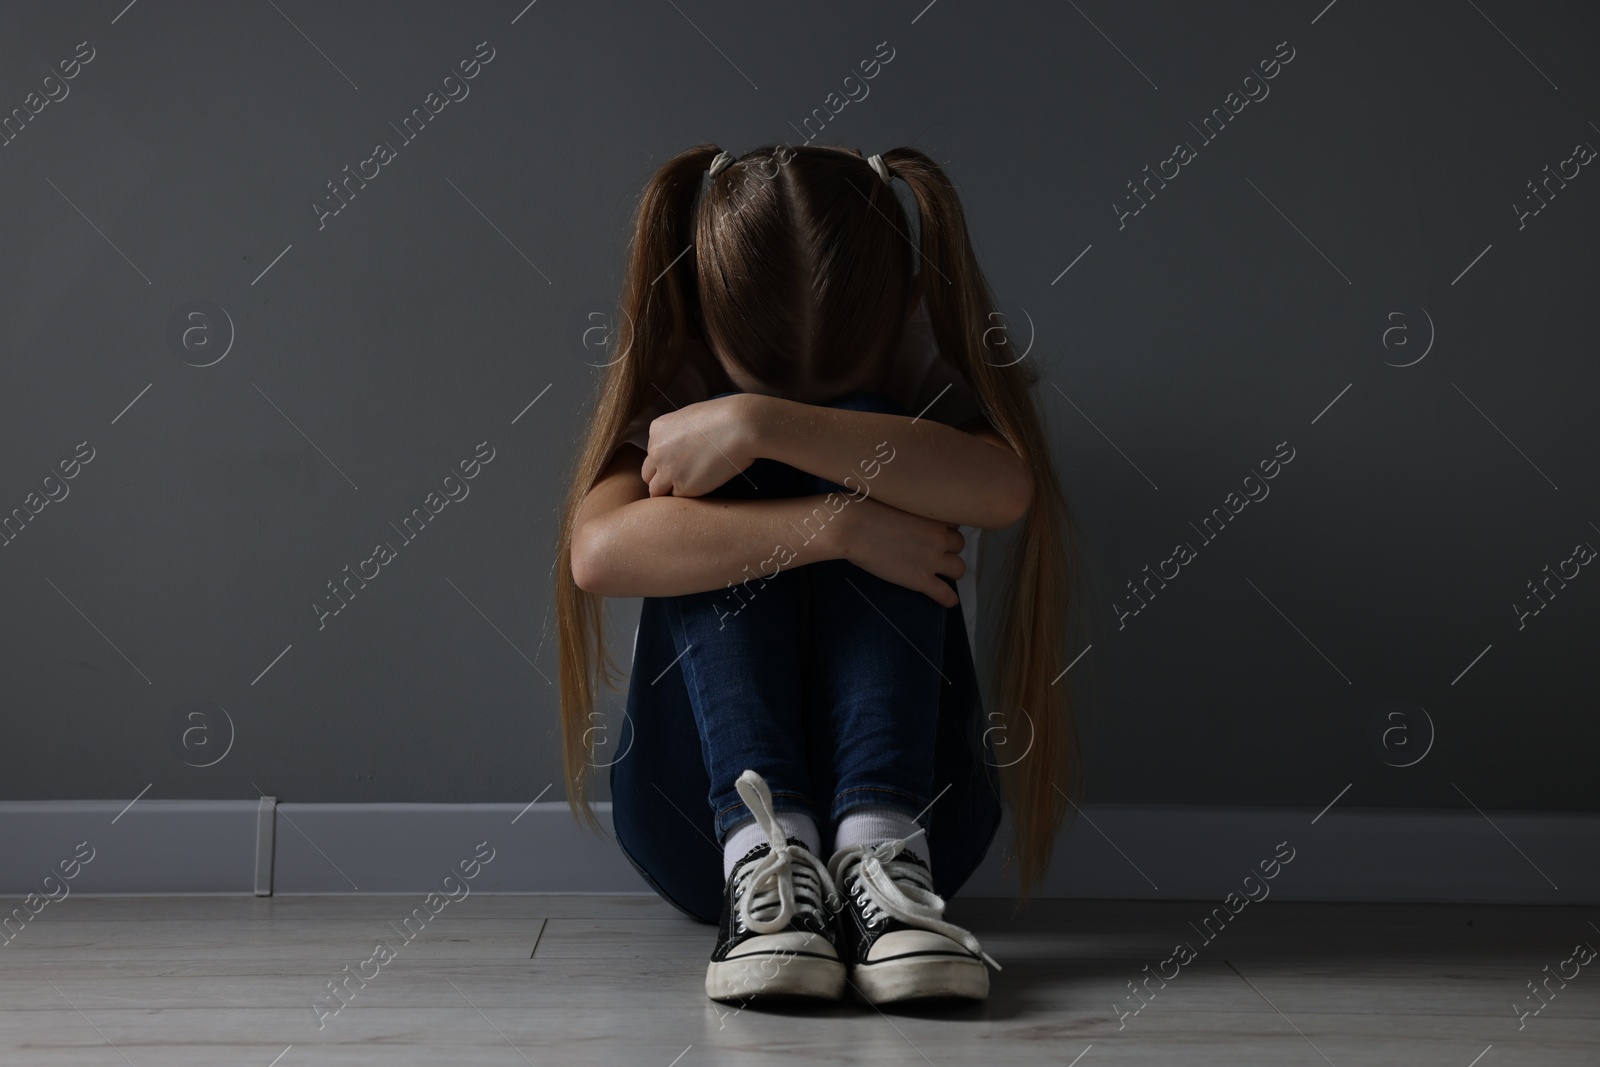 Photo of Sad girl sitting on floor near dark grey wall indoors